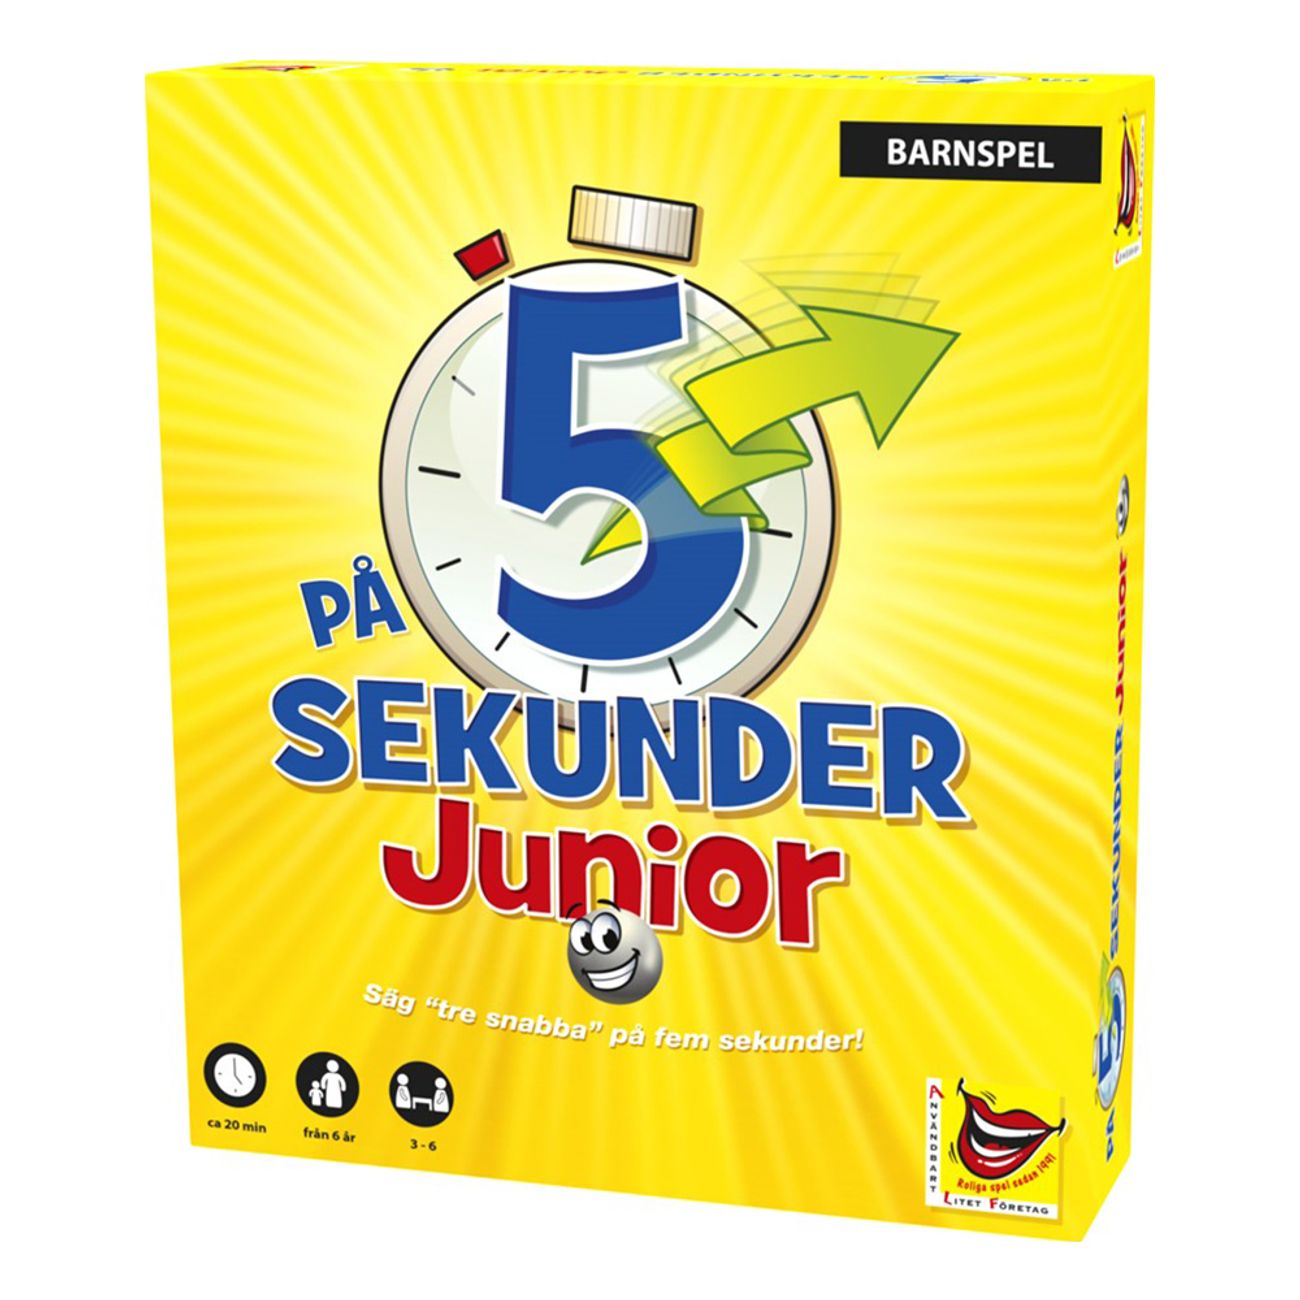 pa-5-sekunder-junior-barnspel-91712-1